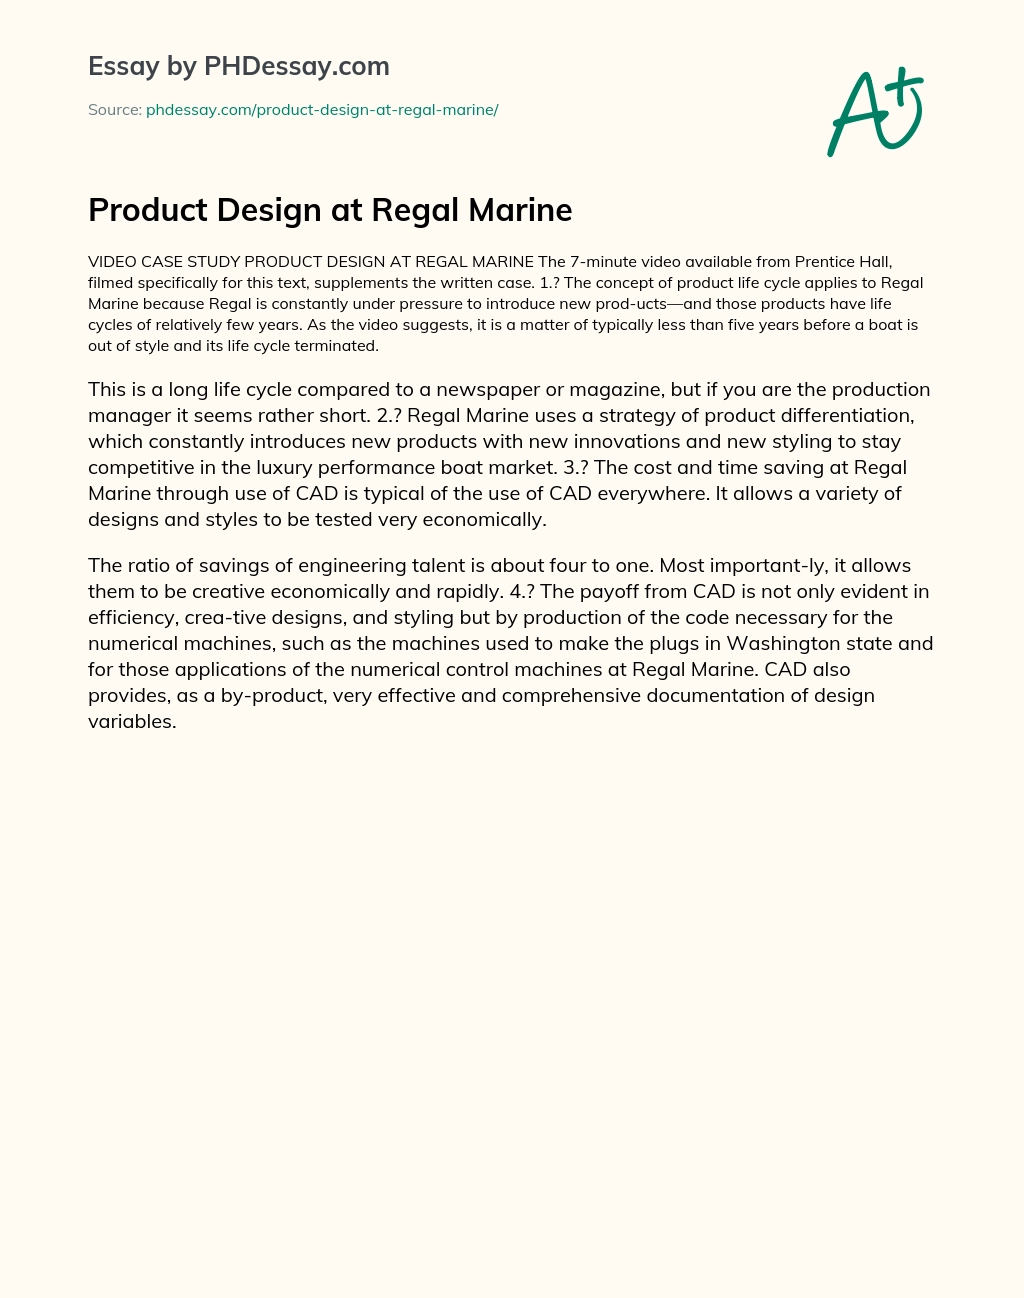 Product Design at Regal Marine essay